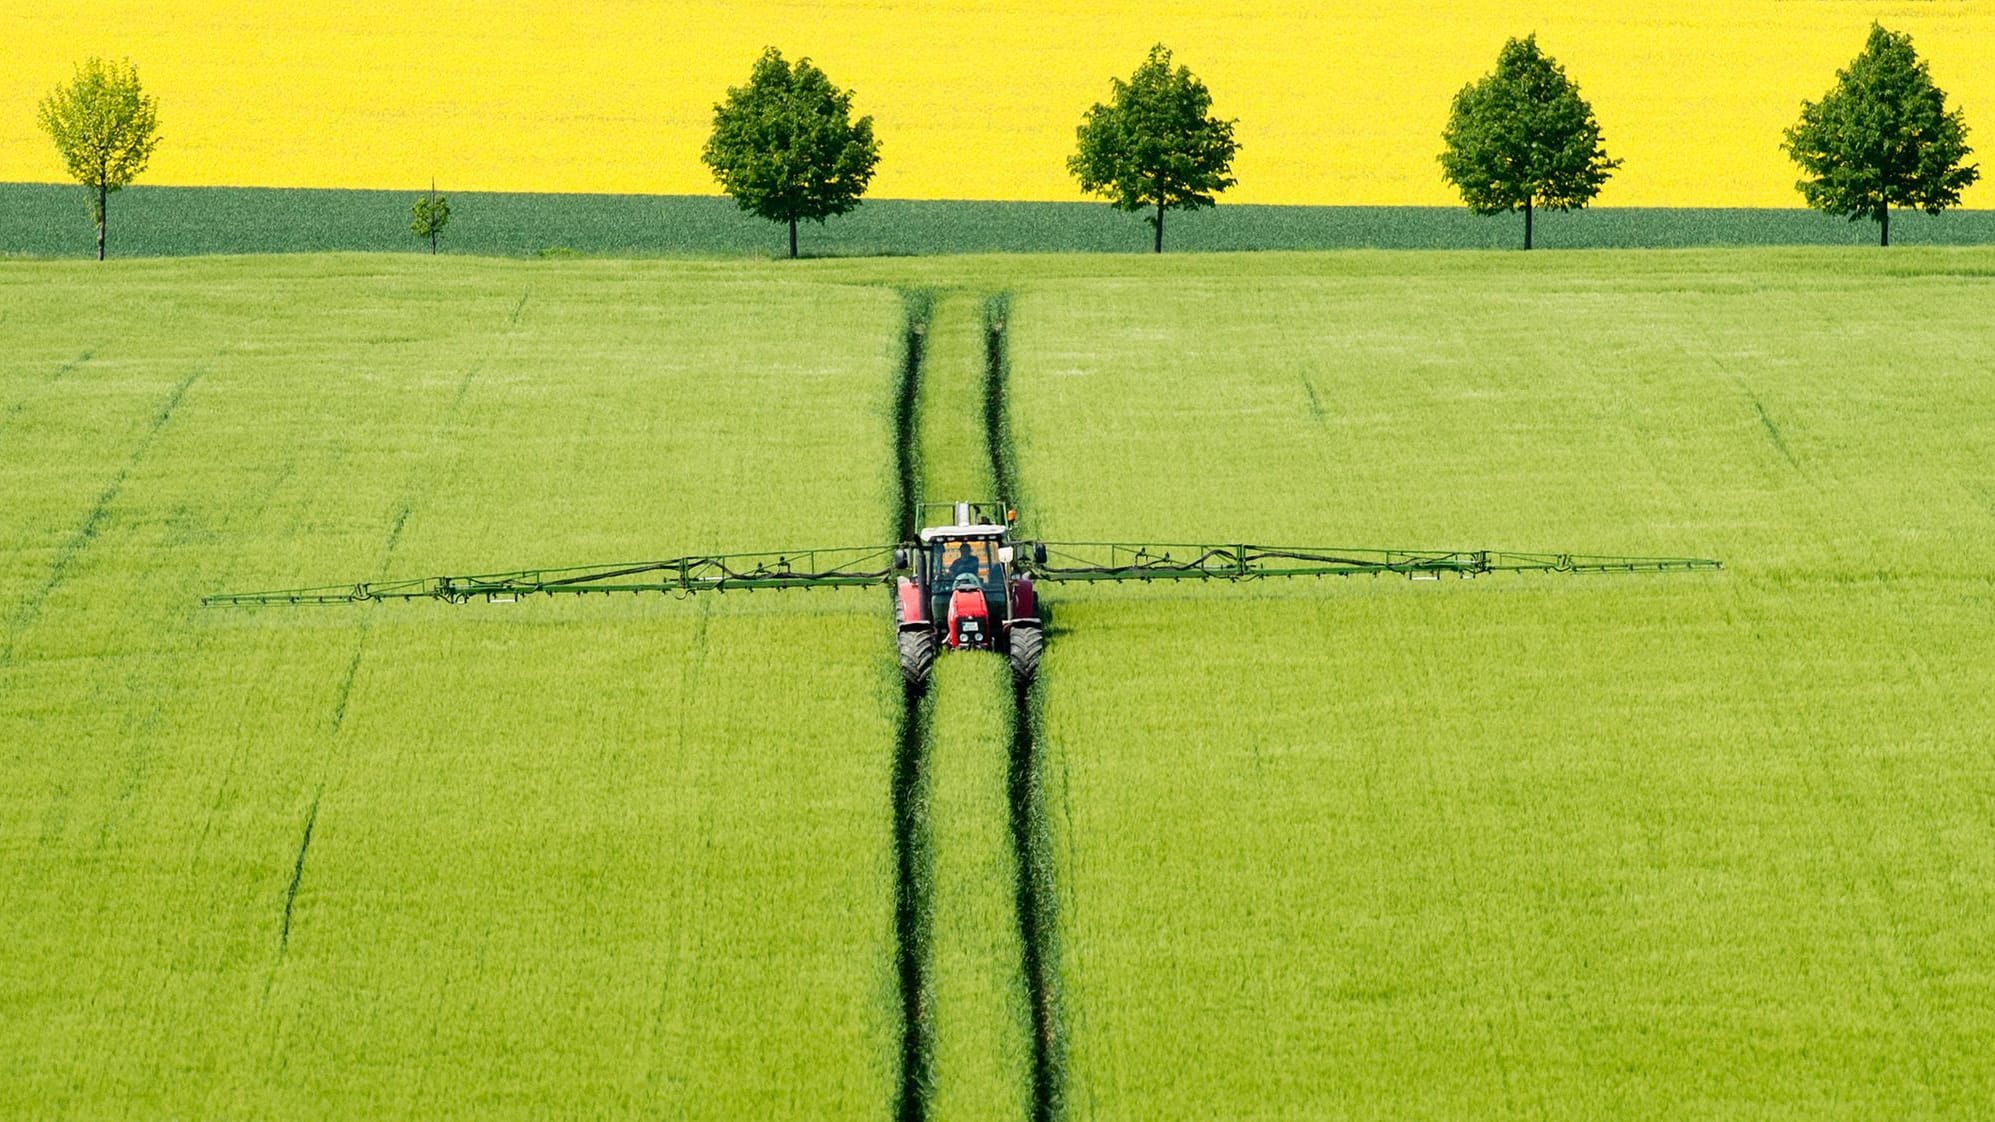 Von der Leyen will Pestizid-Vorschlag zurückziehen